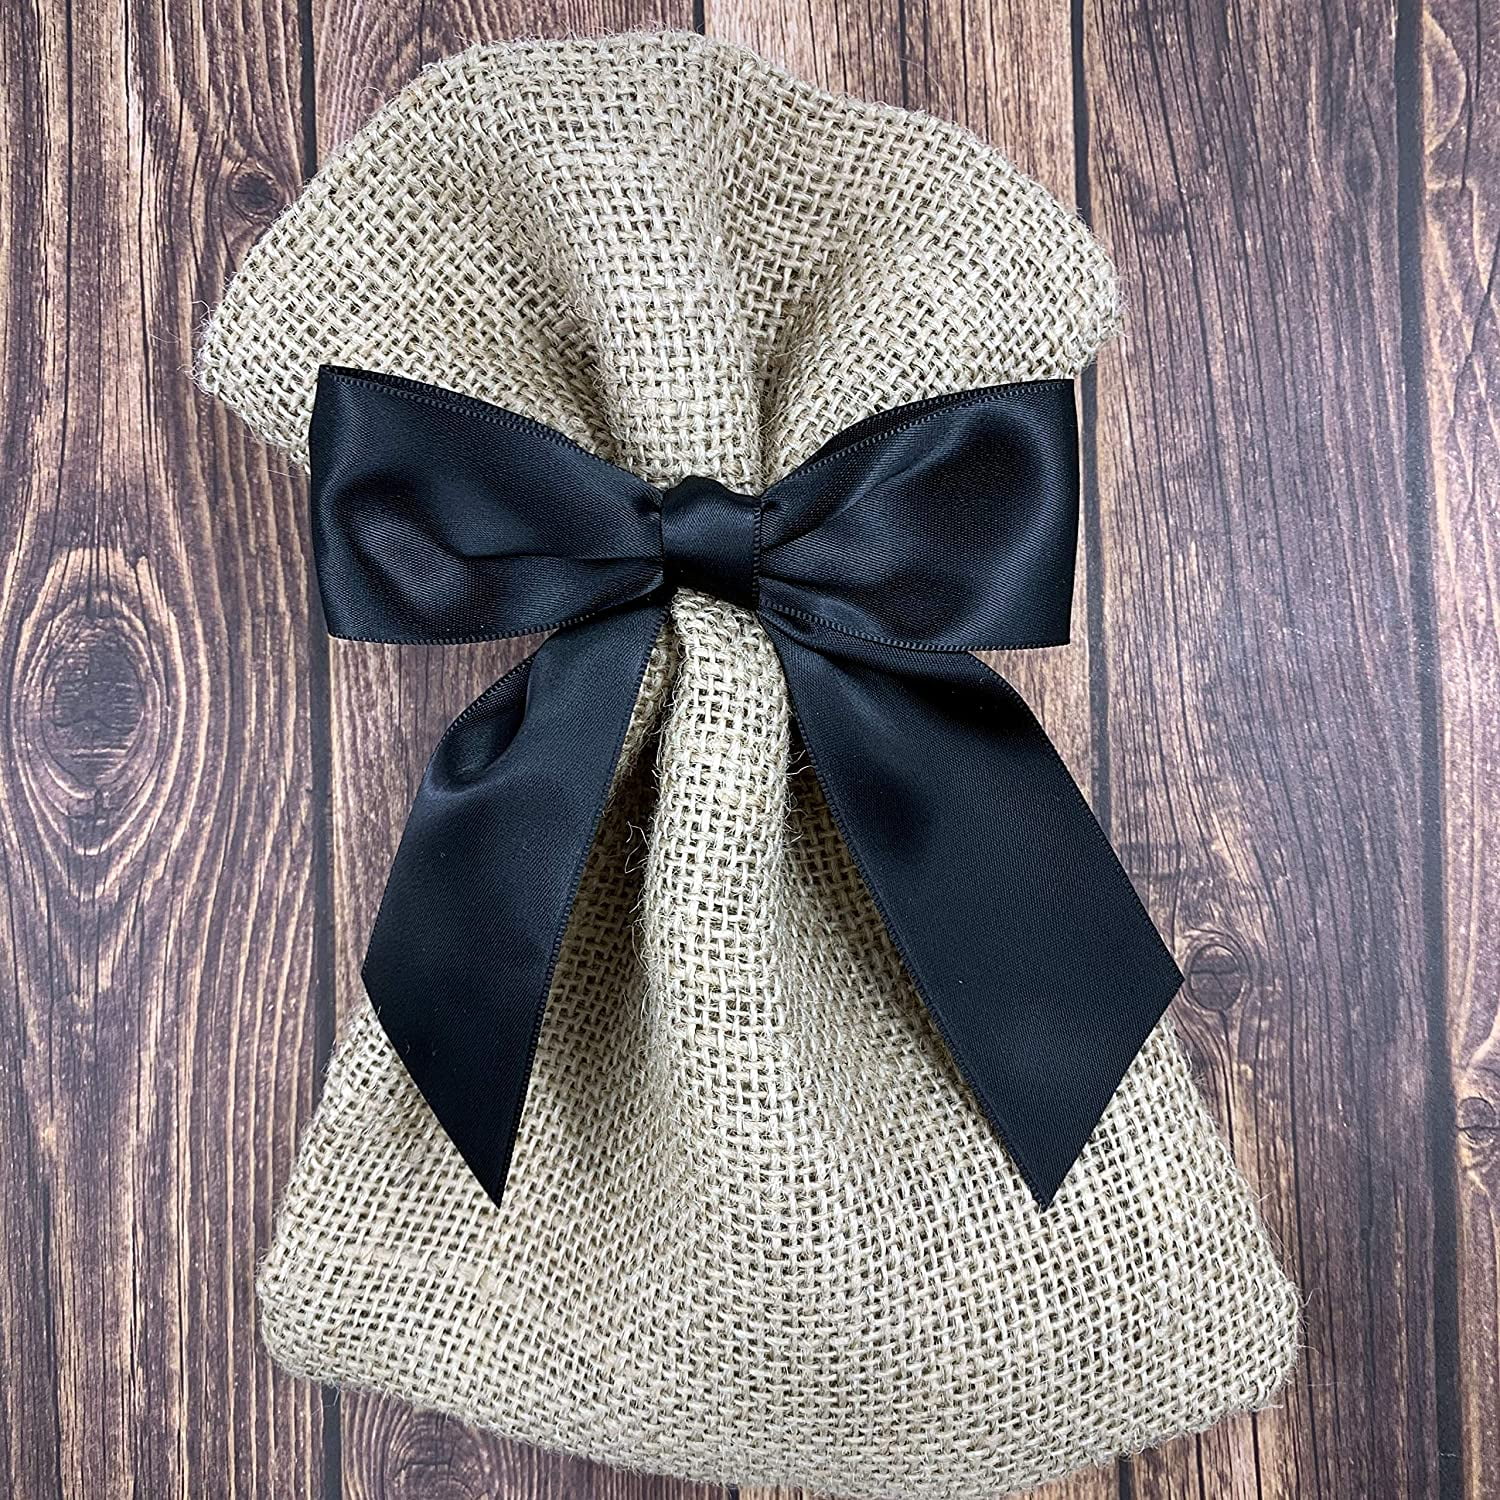 Vintage Bow-tie Kit, Gift Bow Making Kit (V16)